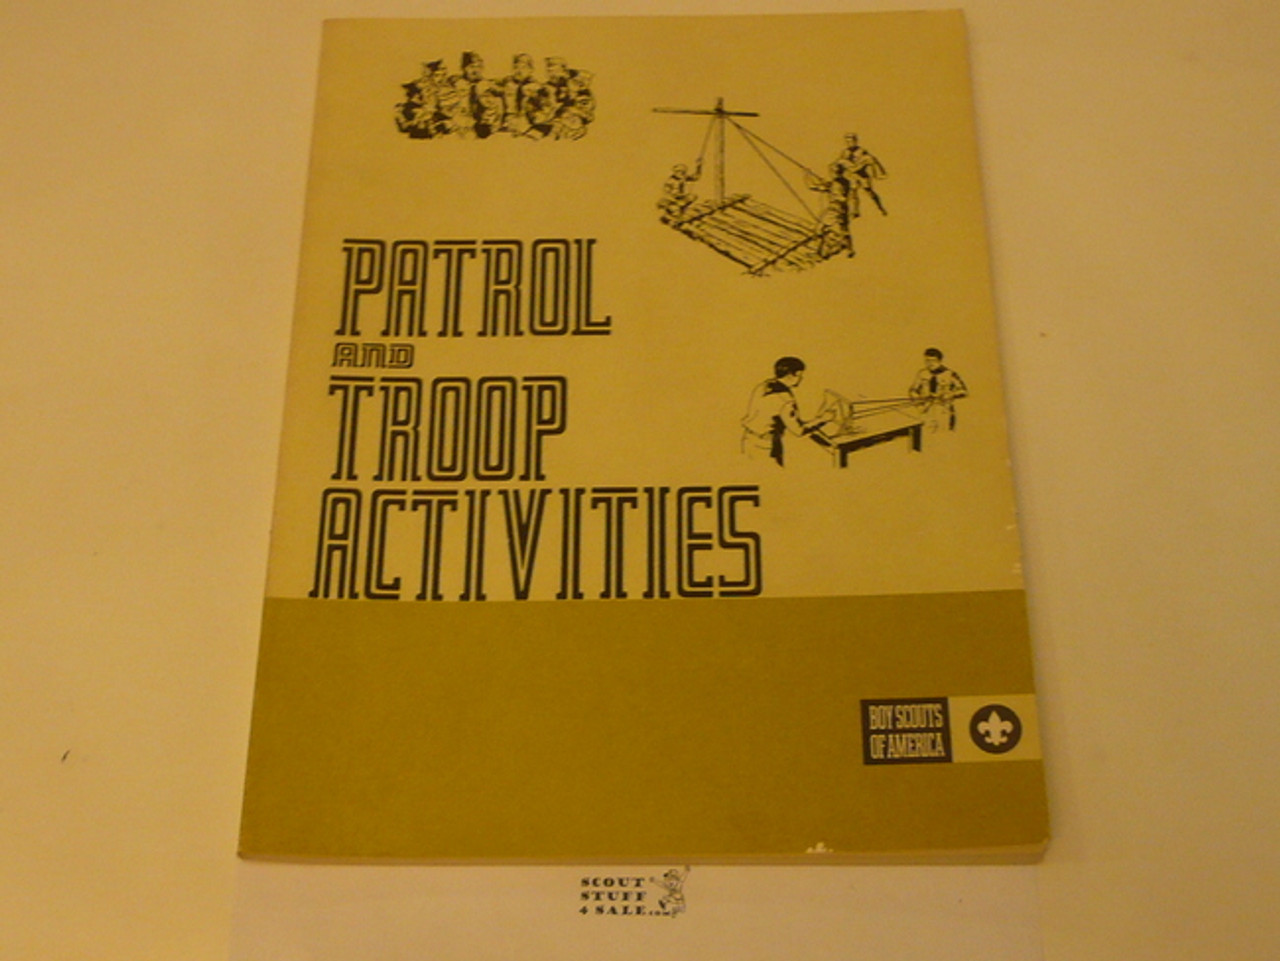 Patrol and Troop Activities Book, 8-74 Printing